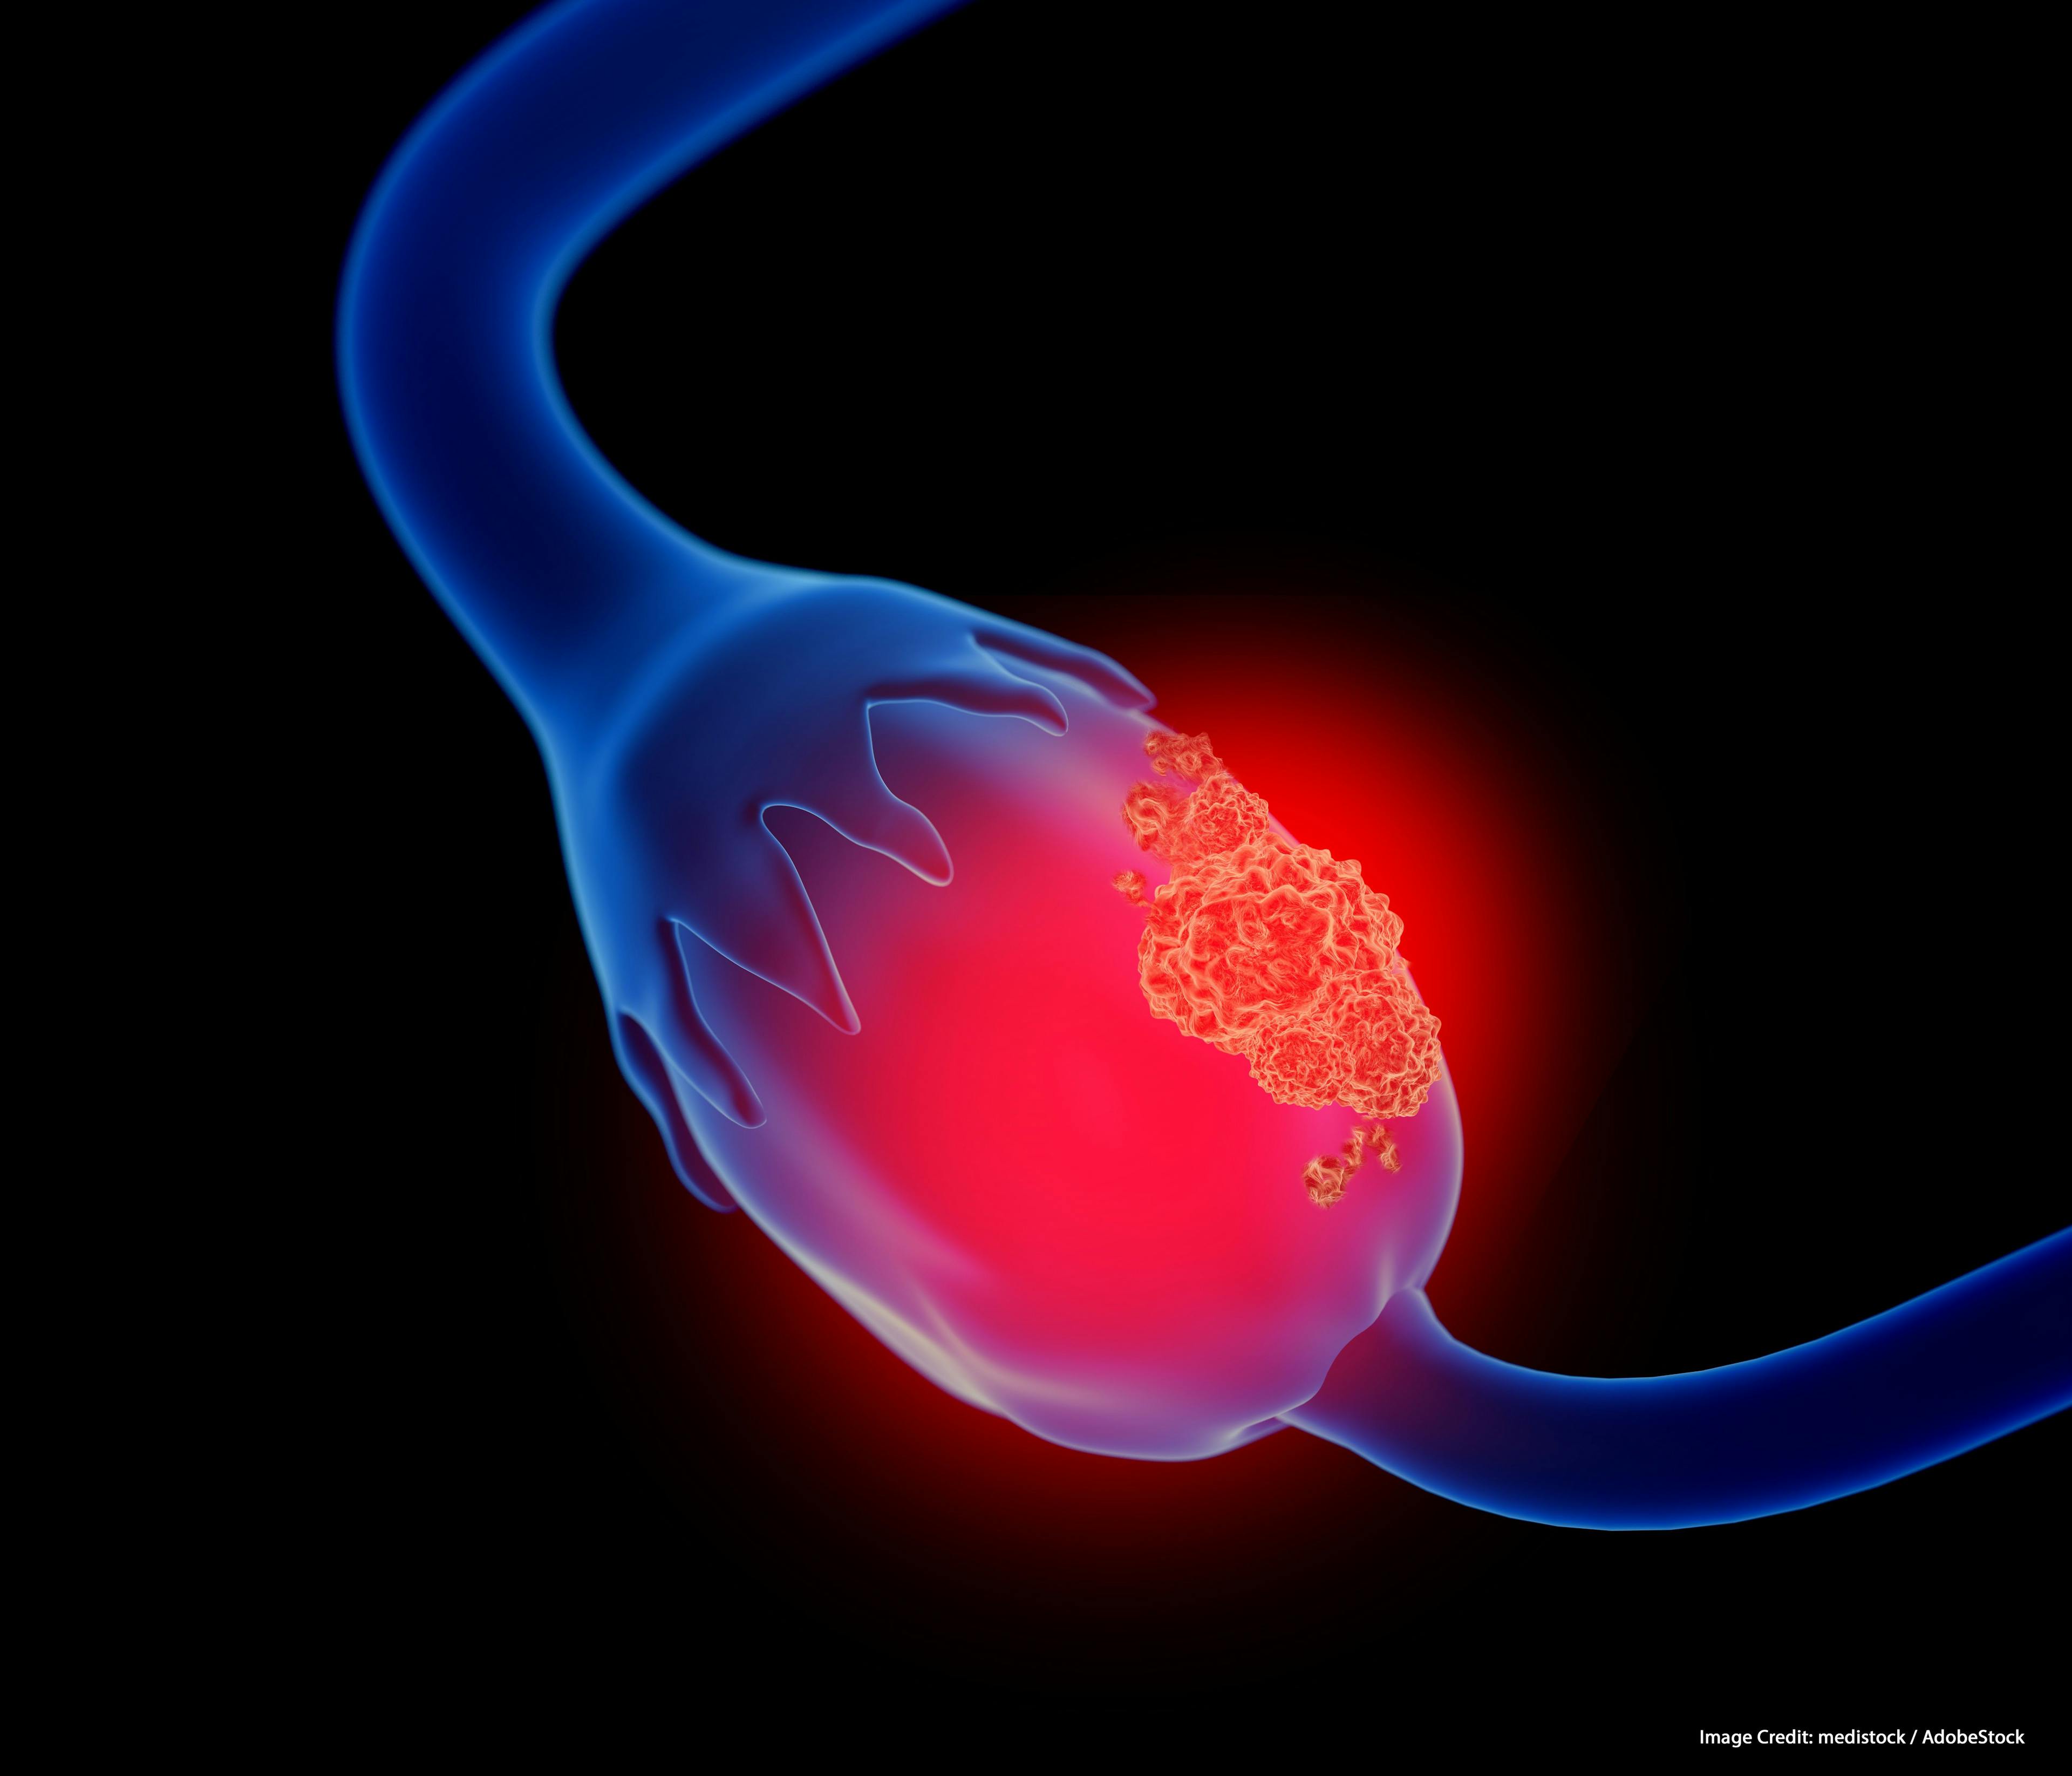 Evaluating Olaparib for BRCA Wild-Type Platinum-Resistant Ovarian Cancer